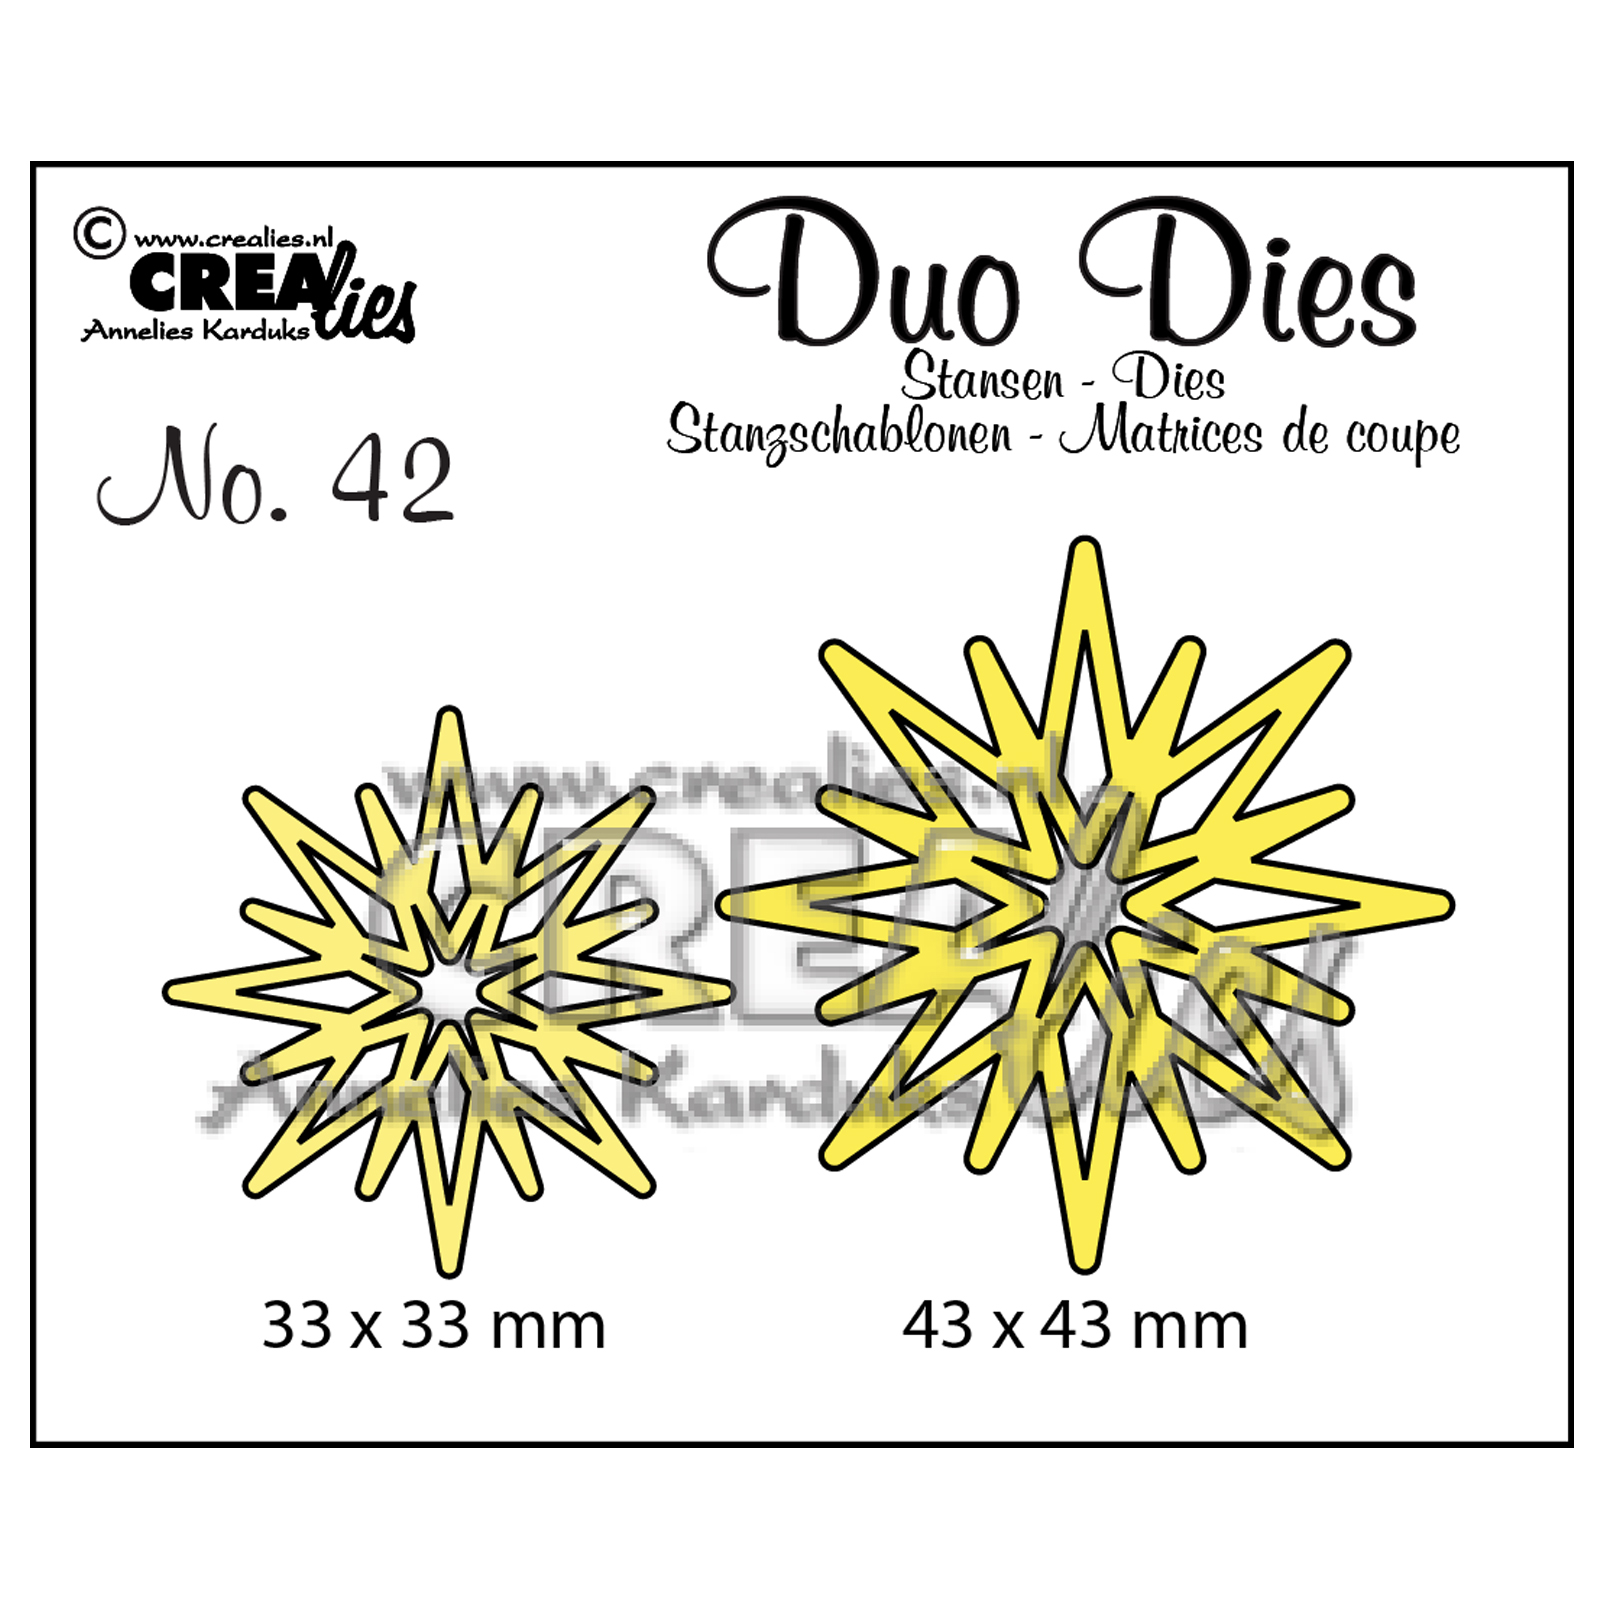 Crealies • Duo Dies no.42 Sterren